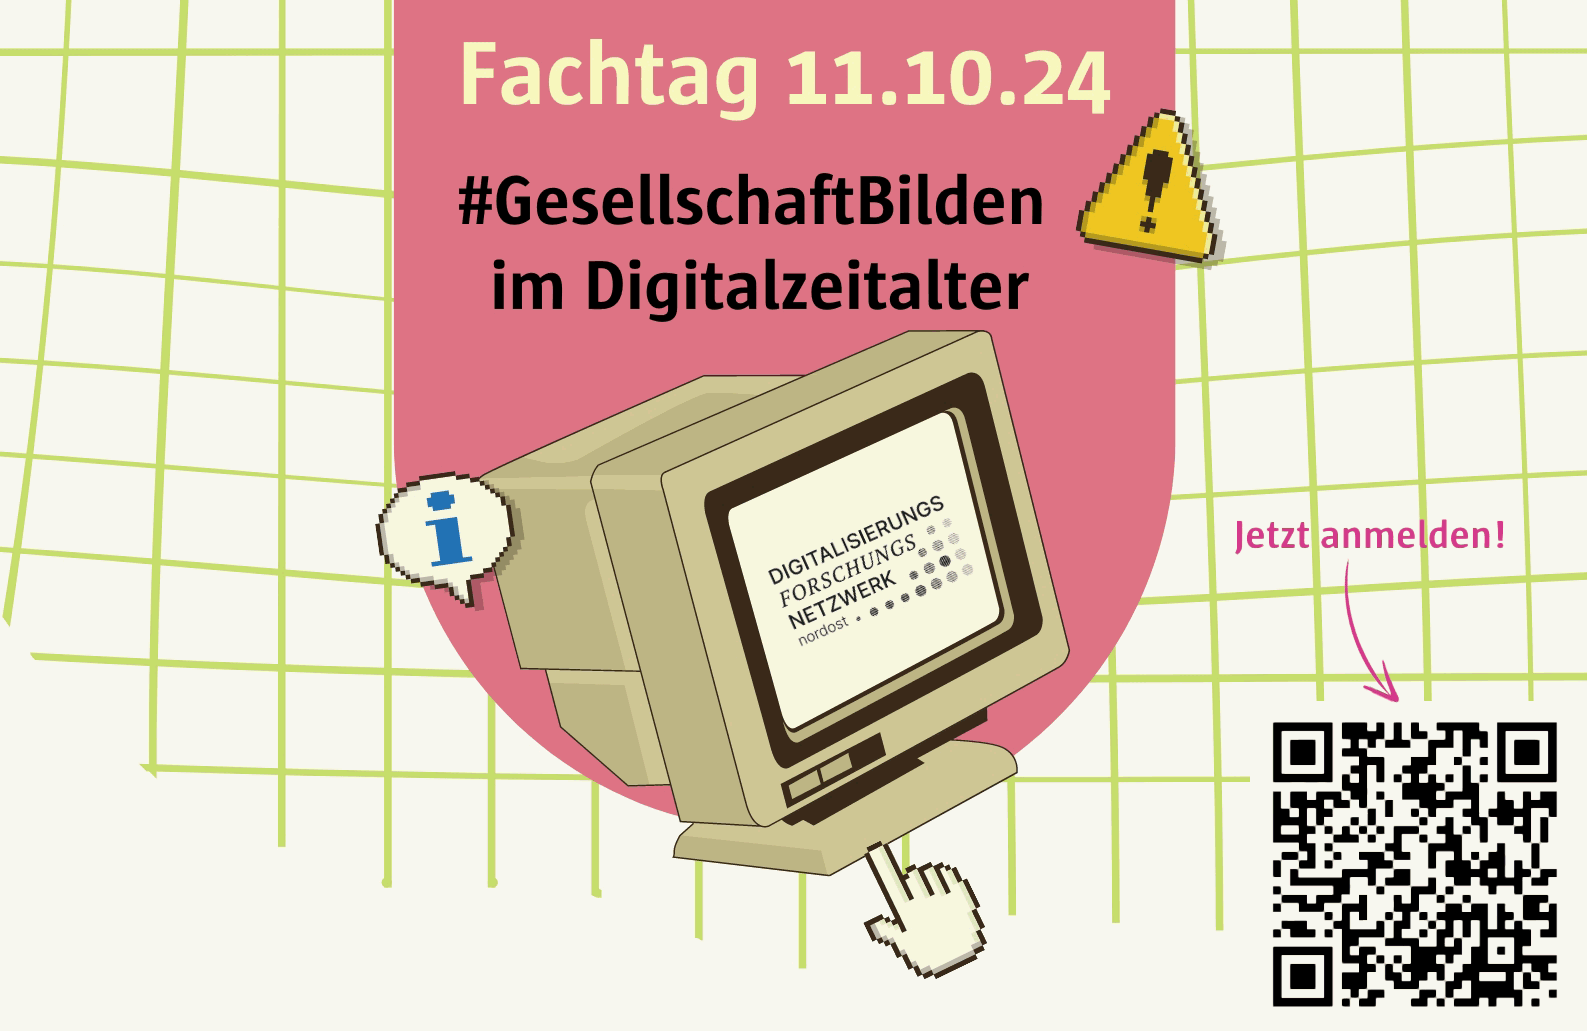 Postkarte mit Einladung zum Fachtag "#GesellschaftBilden im Digitalzeitalter" des Digitalisierungsforschungsnetzwerk Nordost am 11.10.24